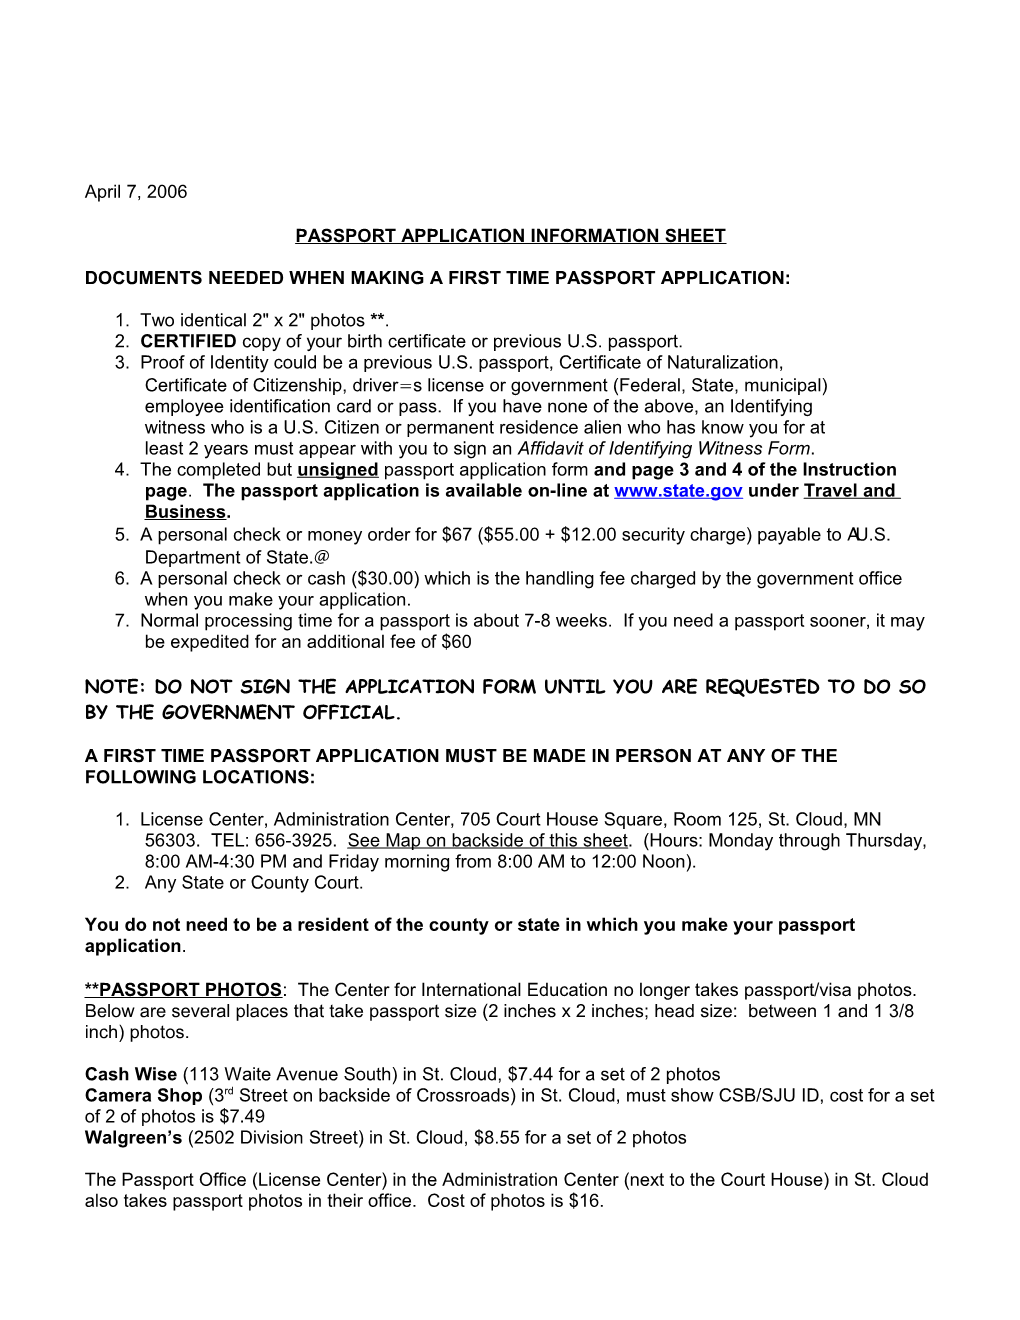 Passport Application Information Sheet